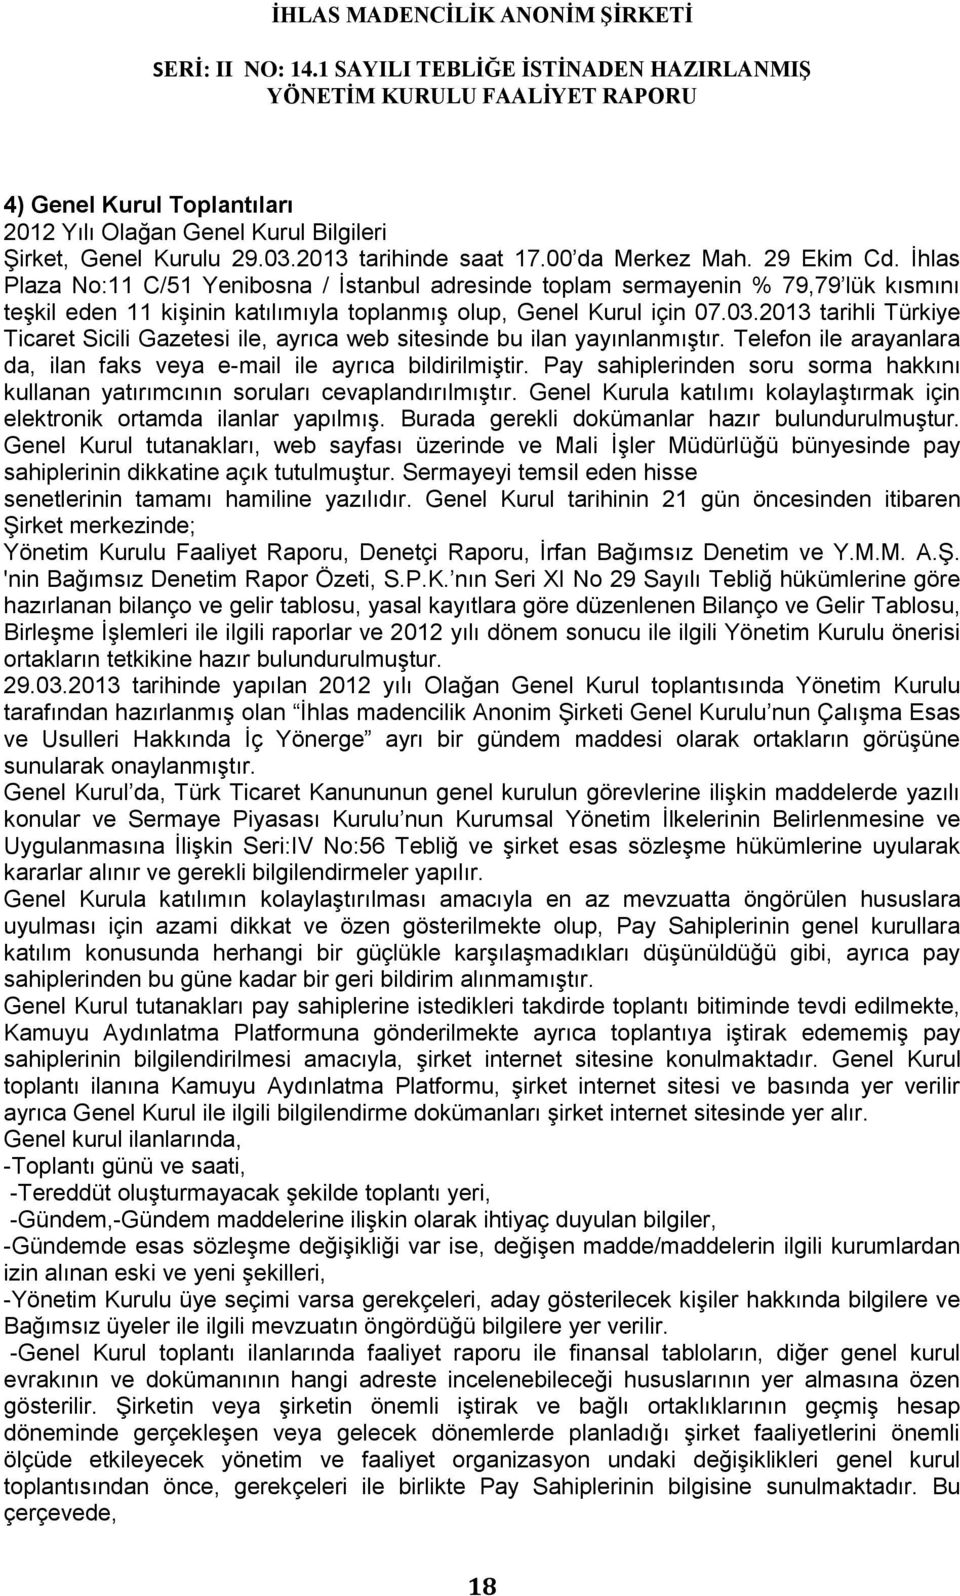 2013 tarihli Türkiye Ticaret Sicili Gazetesi ile, ayrıca web sitesinde bu ilan yayınlanmıştır. Telefon ile arayanlara da, ilan faks veya e-mail ile ayrıca bildirilmiştir.